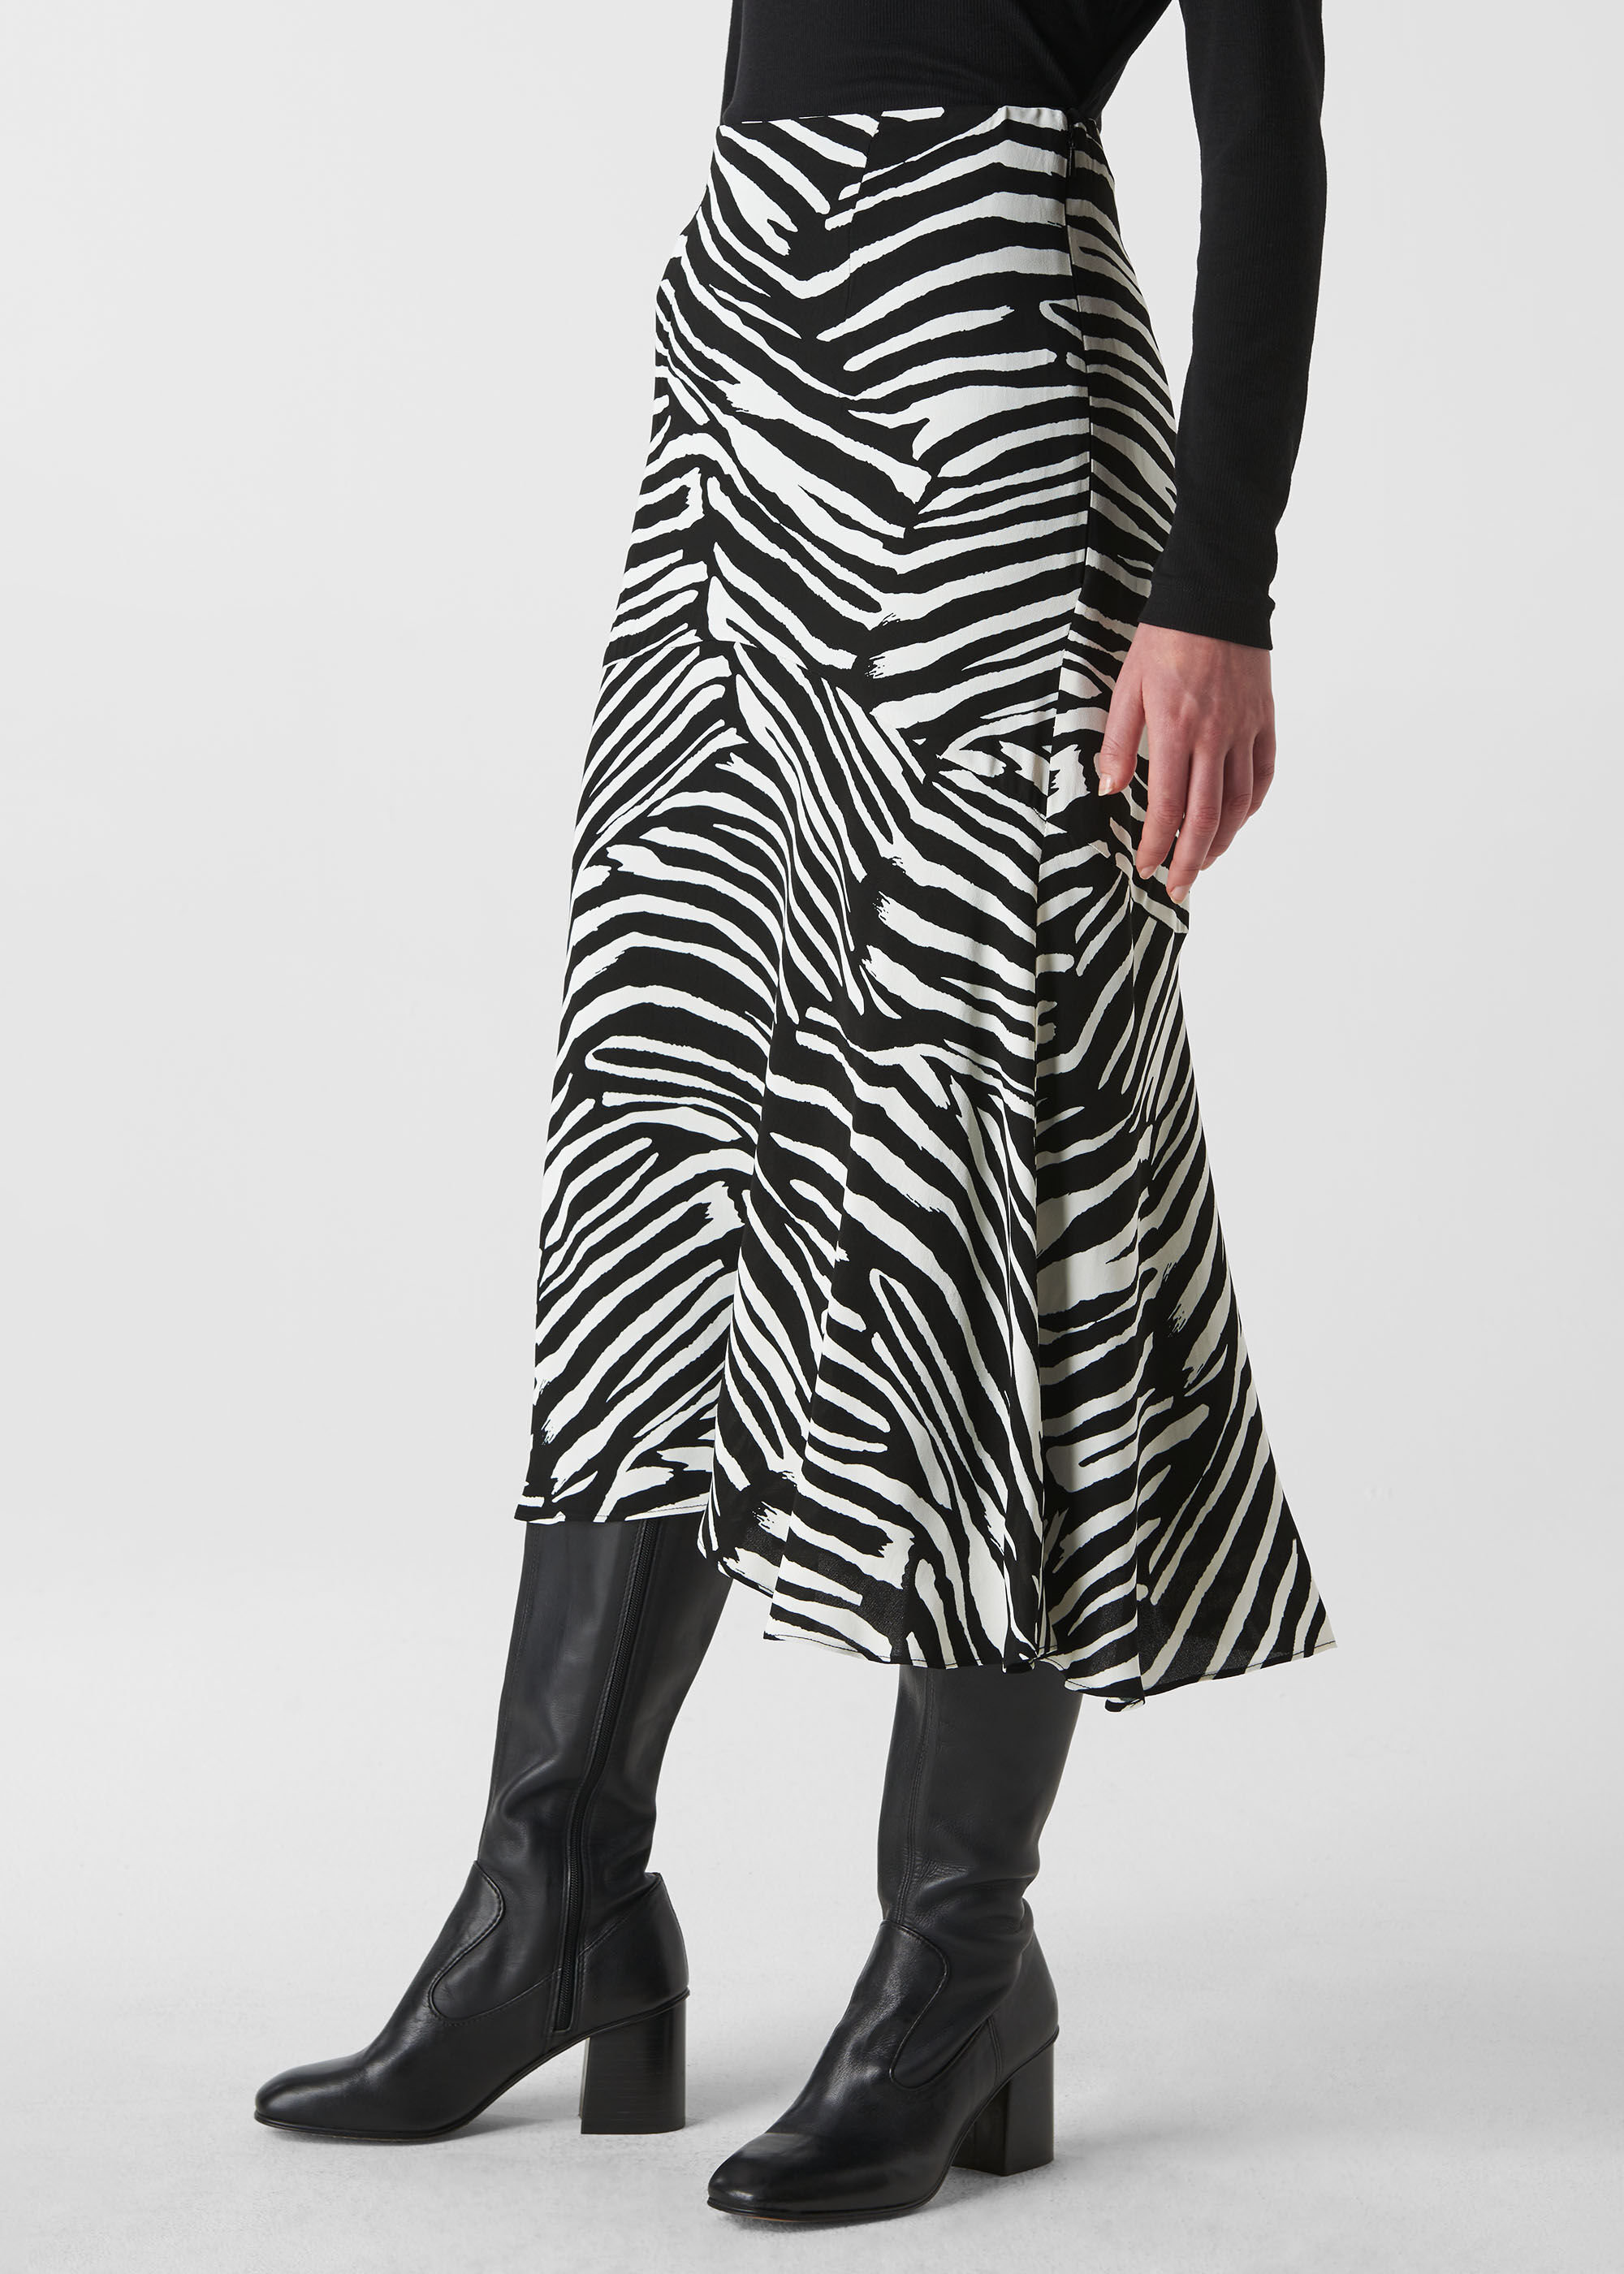 black and white zebra print skirt